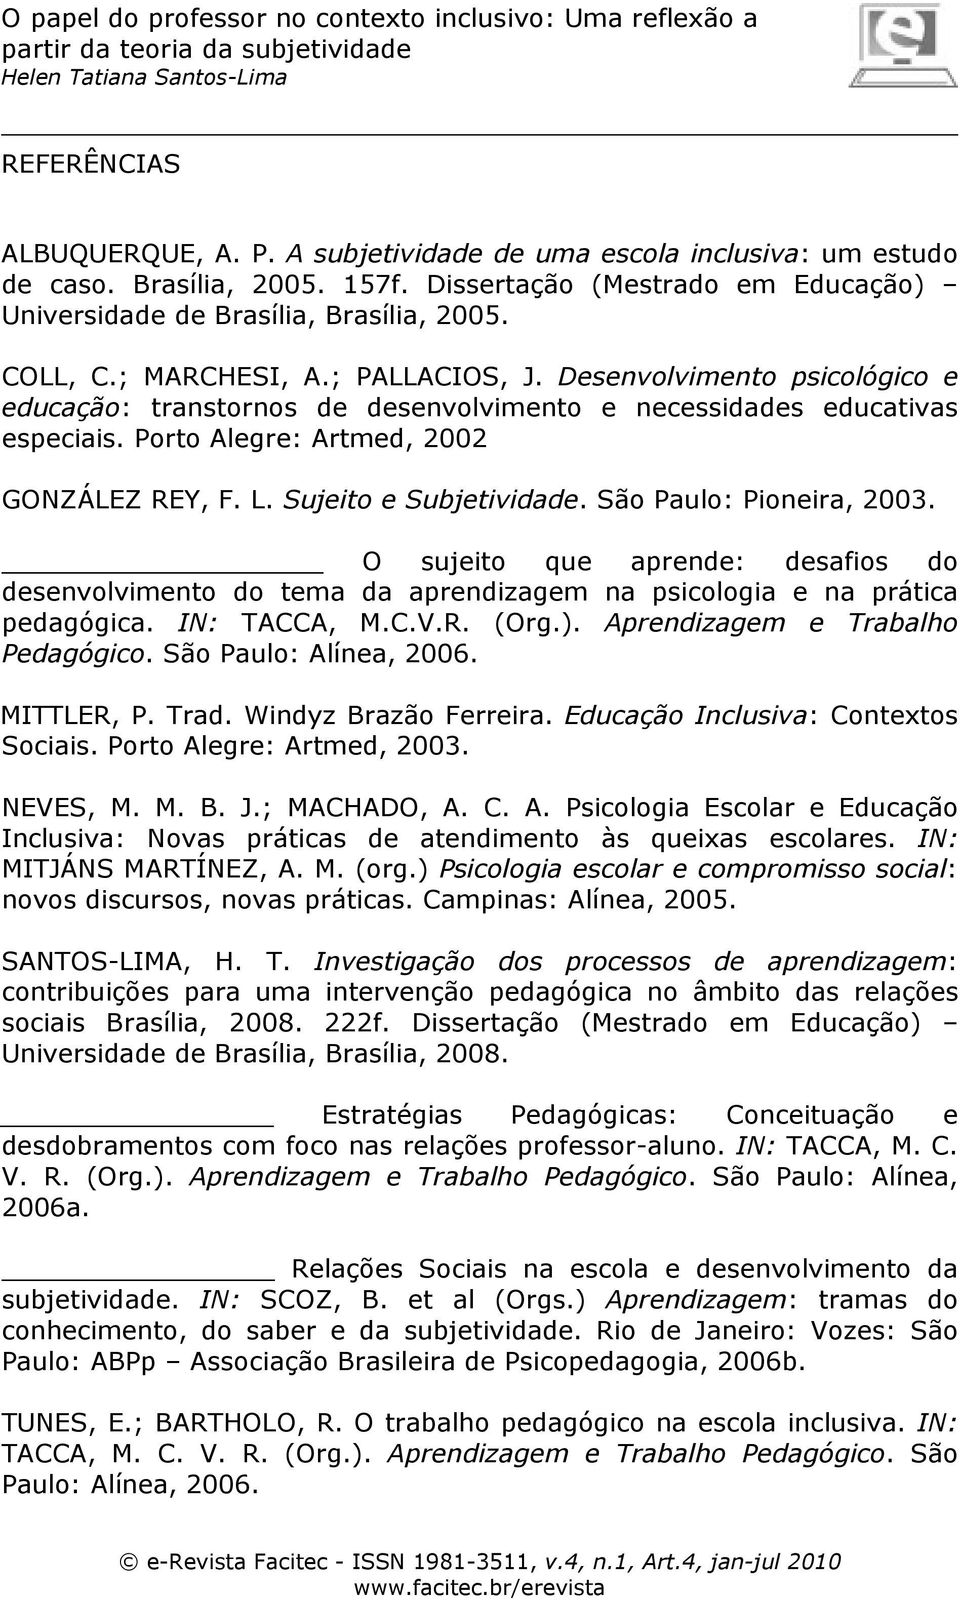 Sujeito e Subjetividade. São Paulo: Pioneira, 2003. O sujeito que aprende: desafios do desenvolvimento do tema da aprendizagem na psicologia e na prática pedagógica. IN: TACCA, M.C.V.R. (Org.).